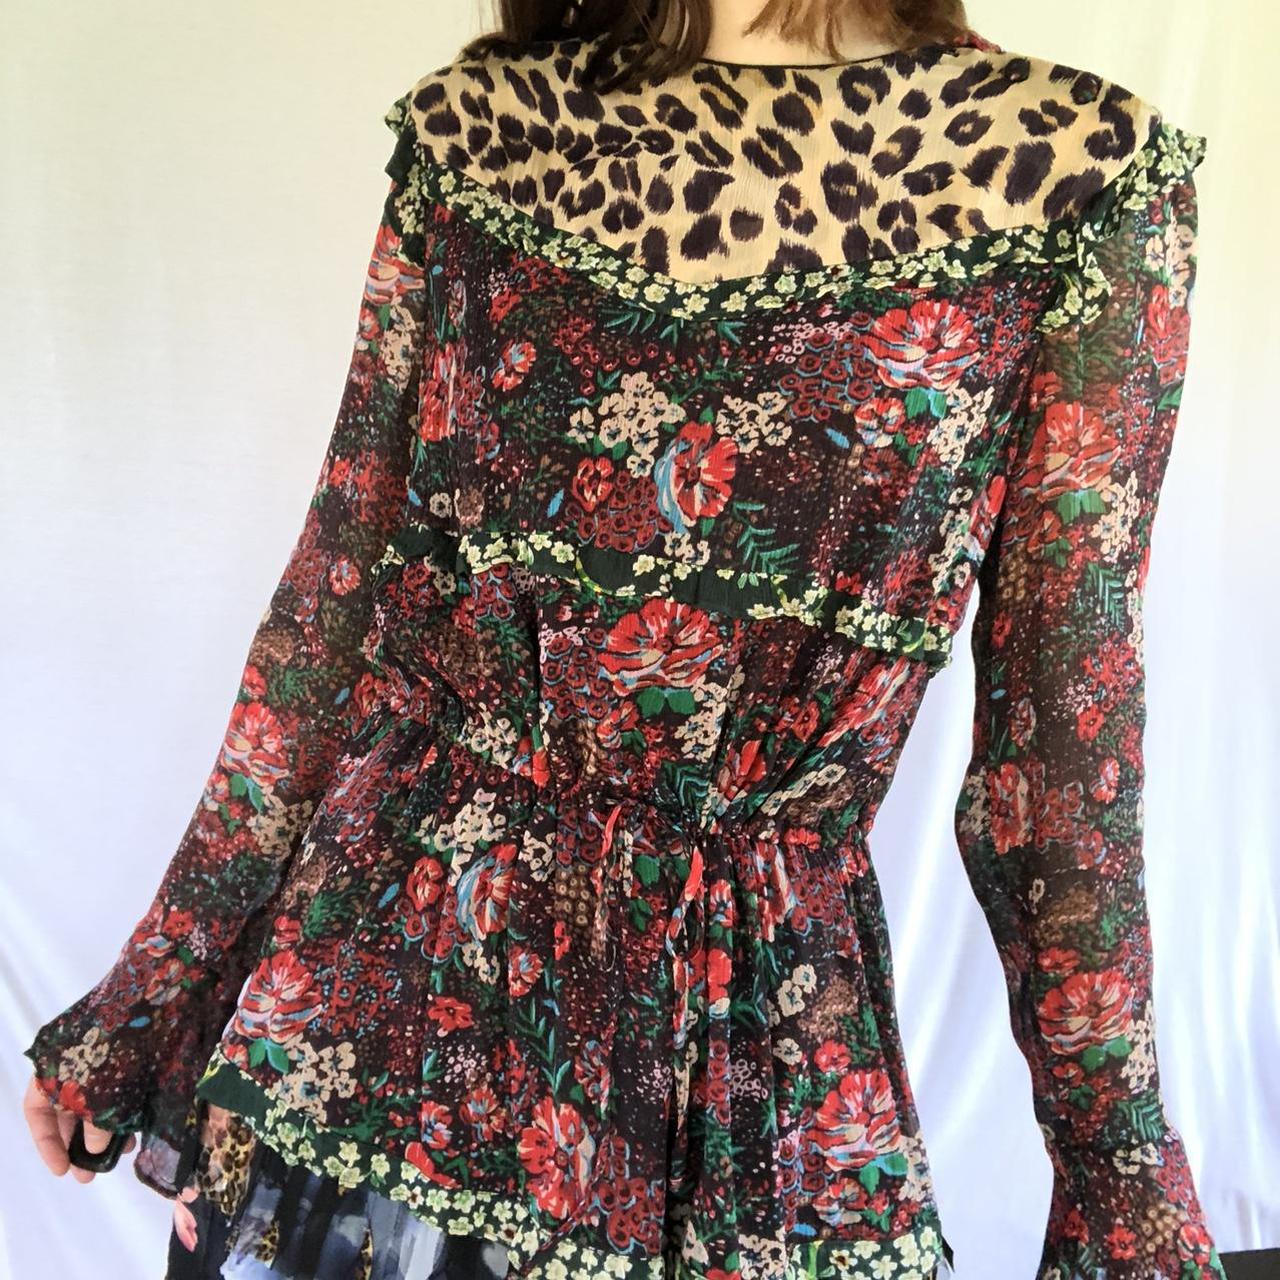 Product Image 2 - Beautiful multi-patterned layered chiffon dress.